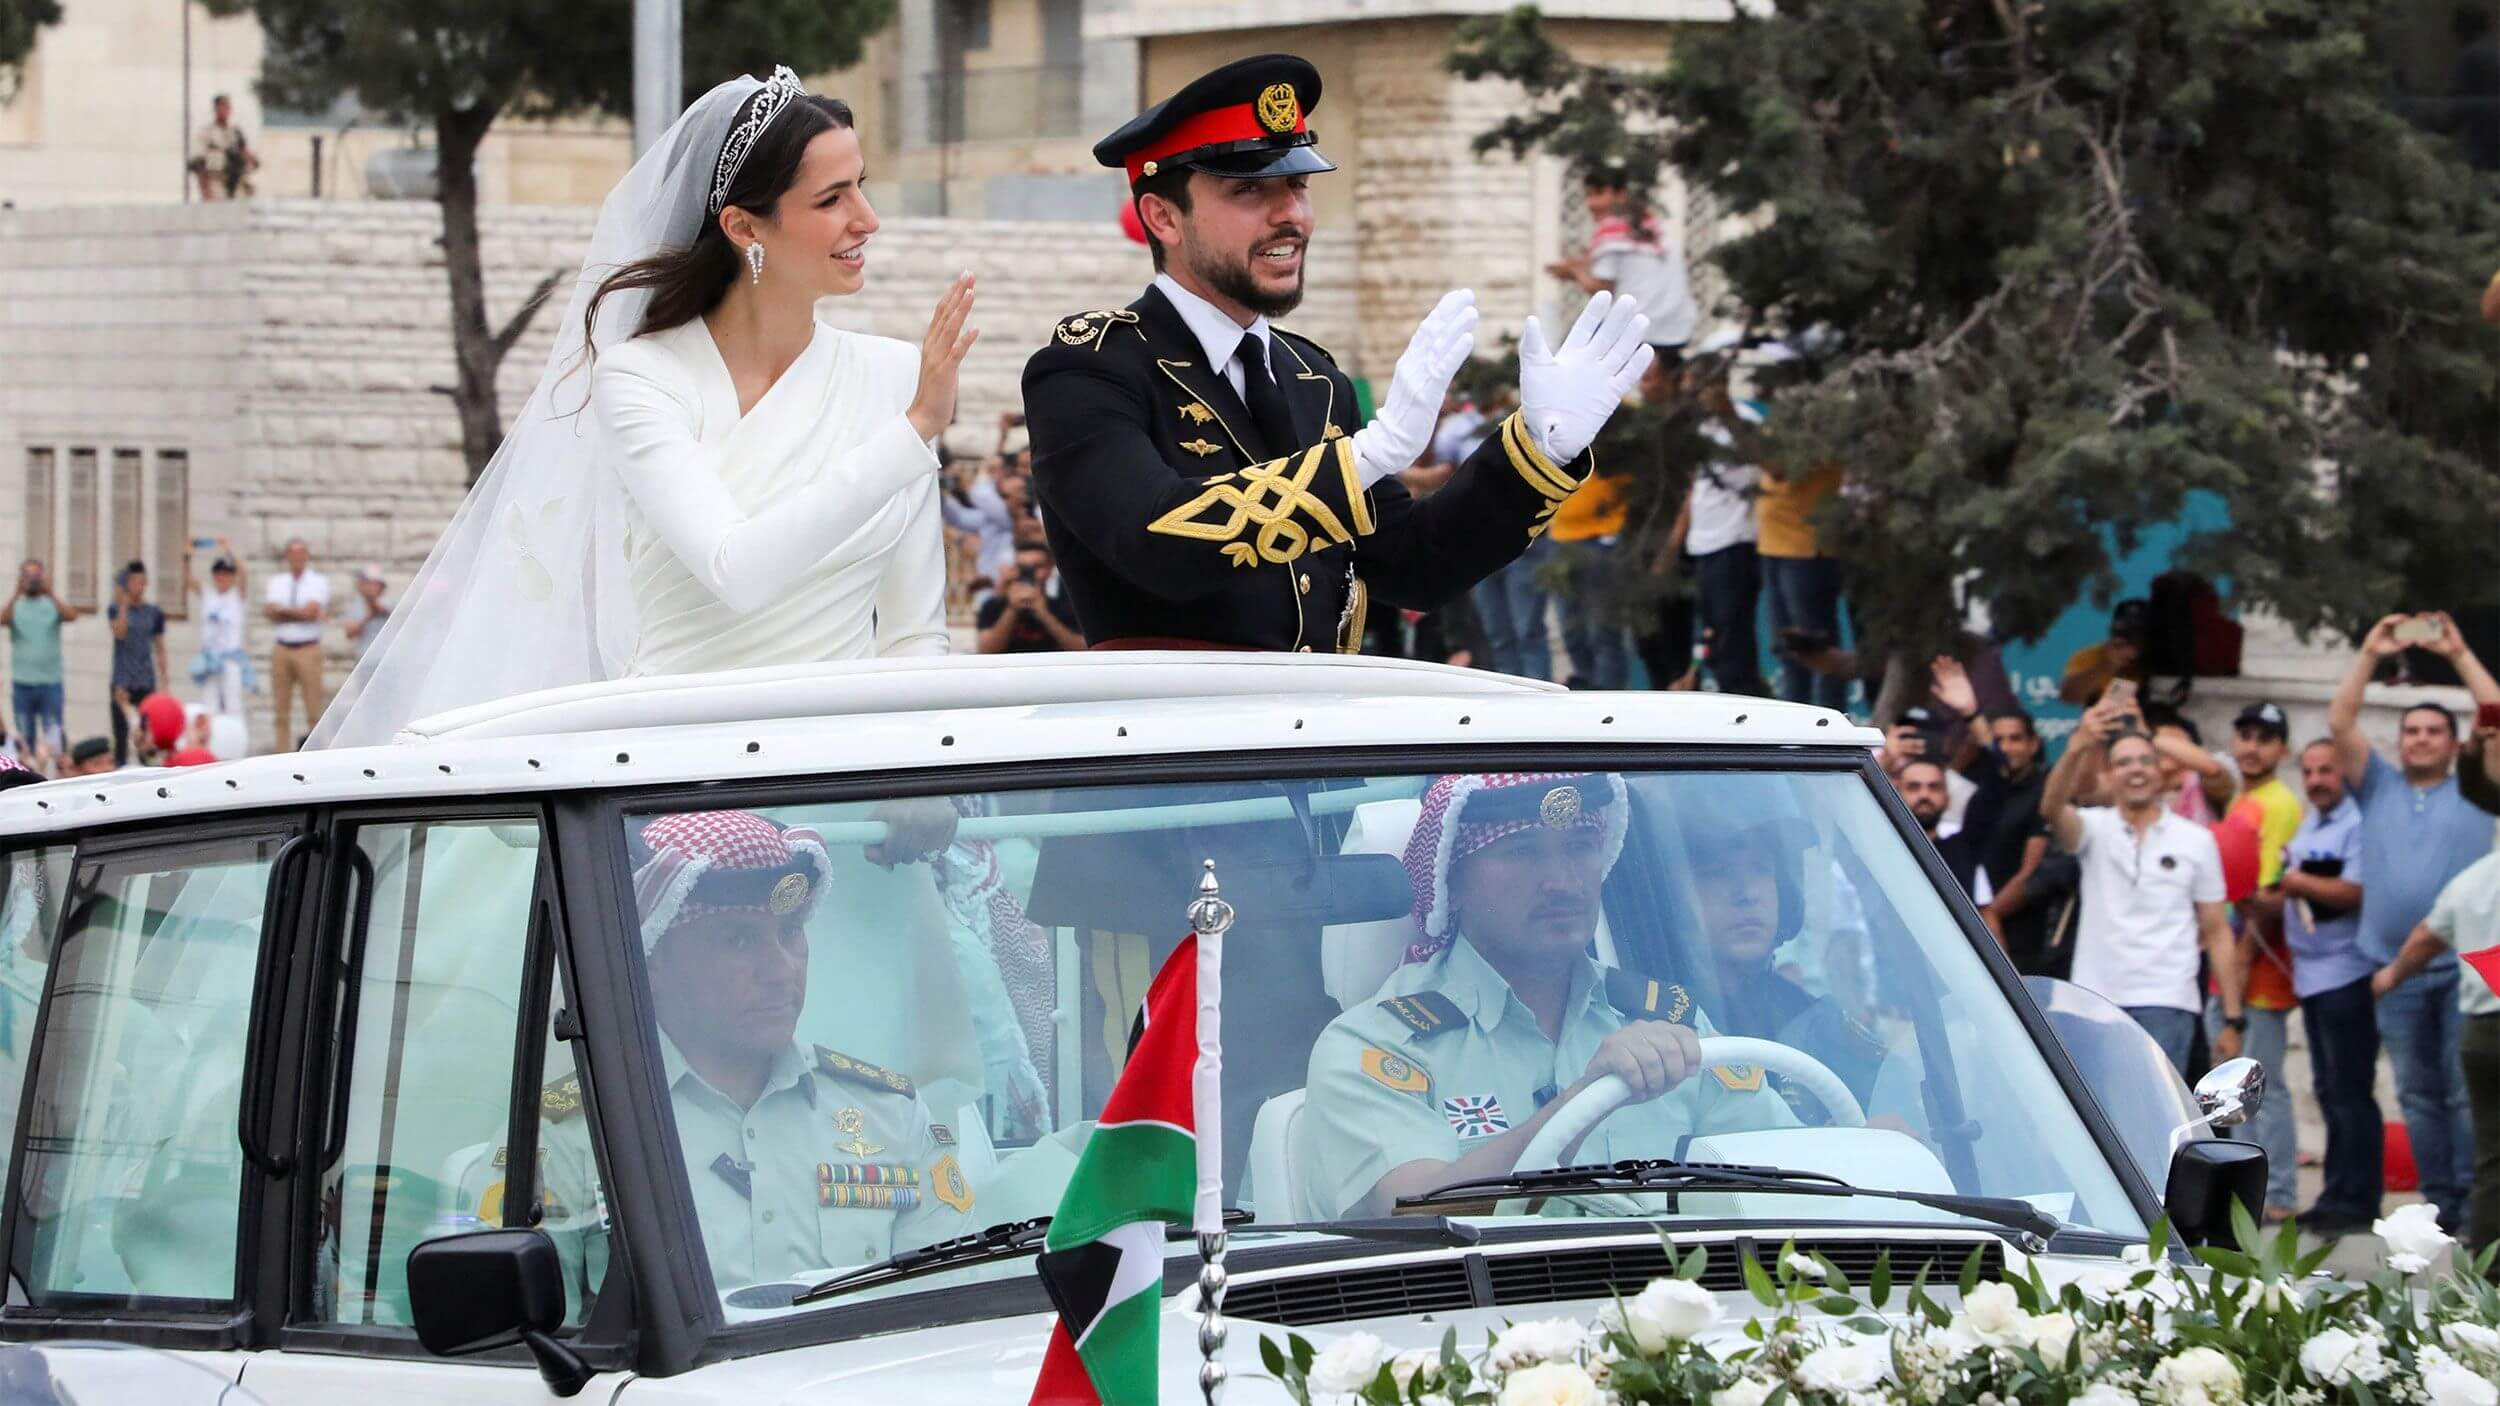 Jordánský korunní princ se oženil se saúdskou rodinou s vazbami na MBS